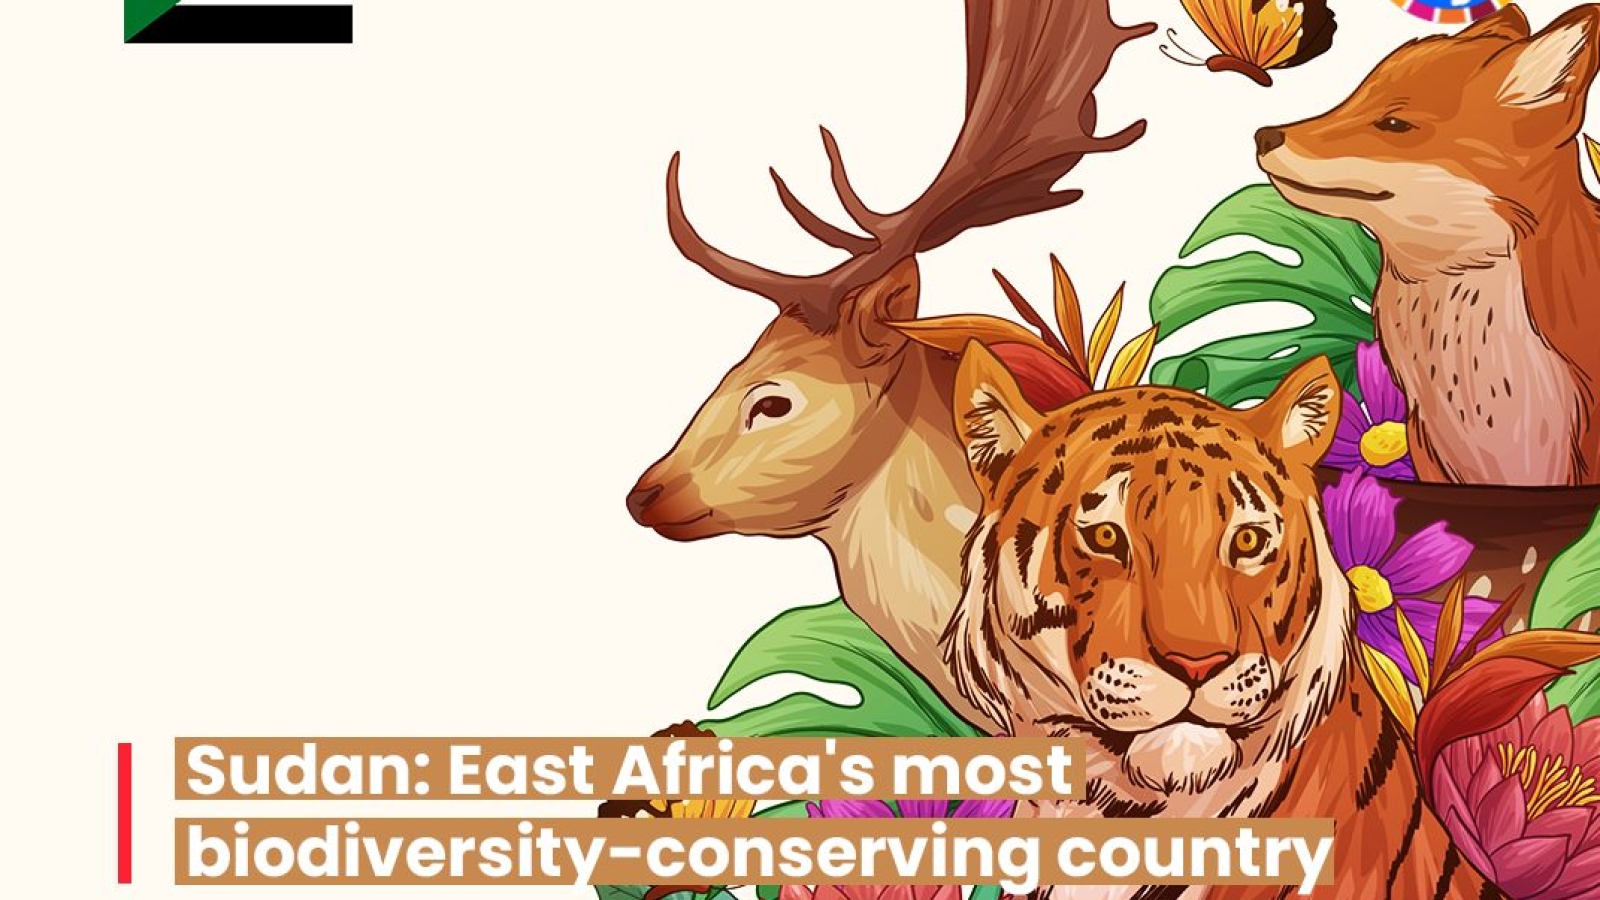 السودان - الدولة الأكثر محافظة على التنوع البيولوجي في شرق أفريقيا